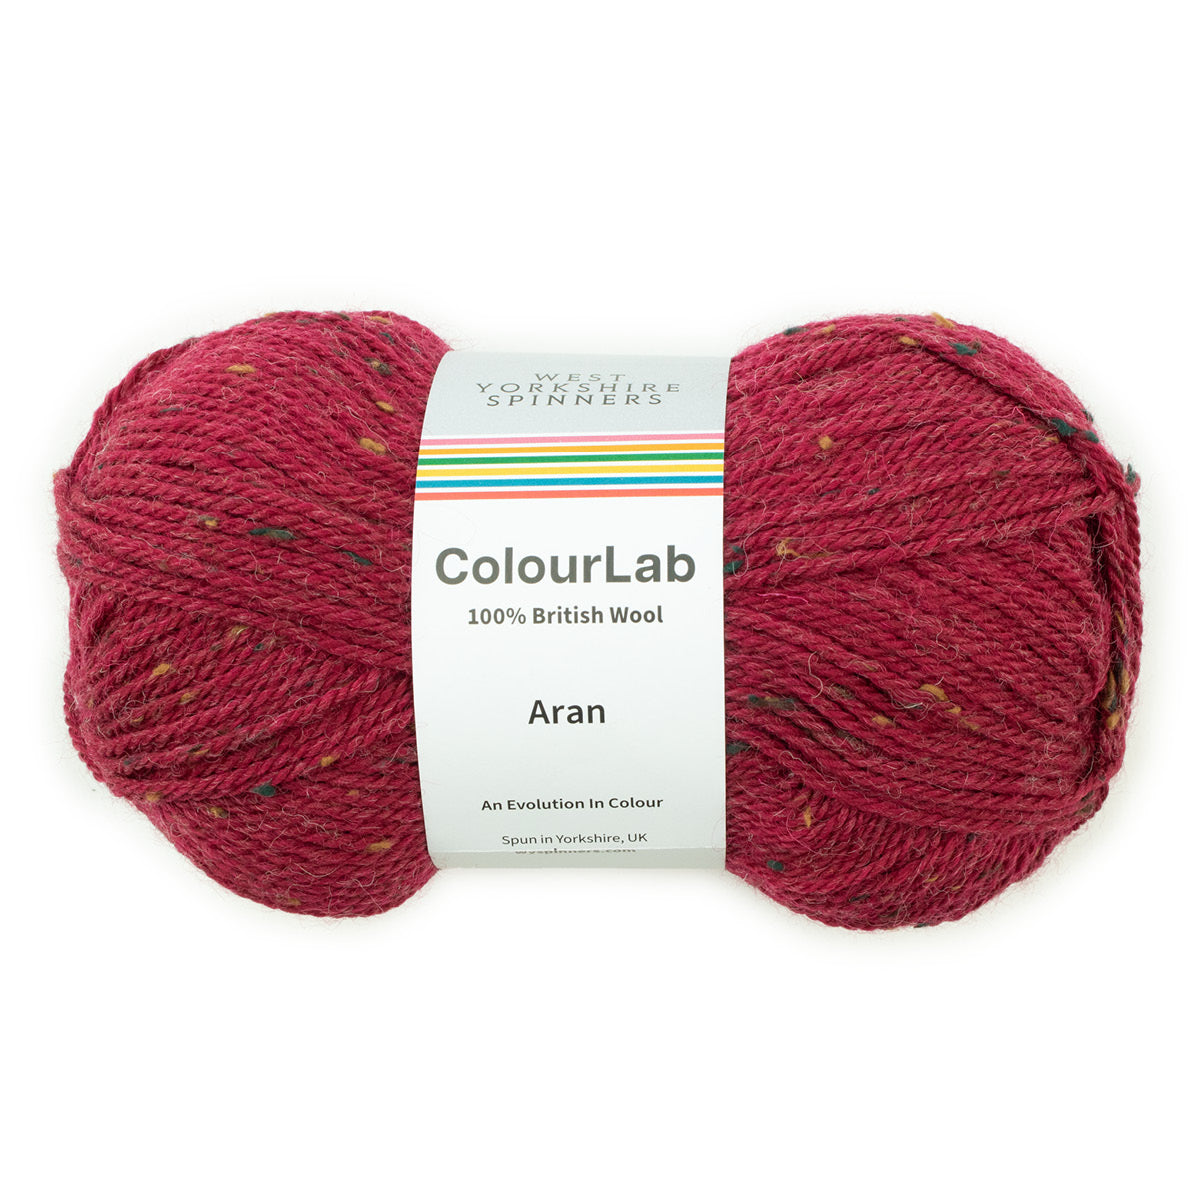 WYS ColourLab Aran